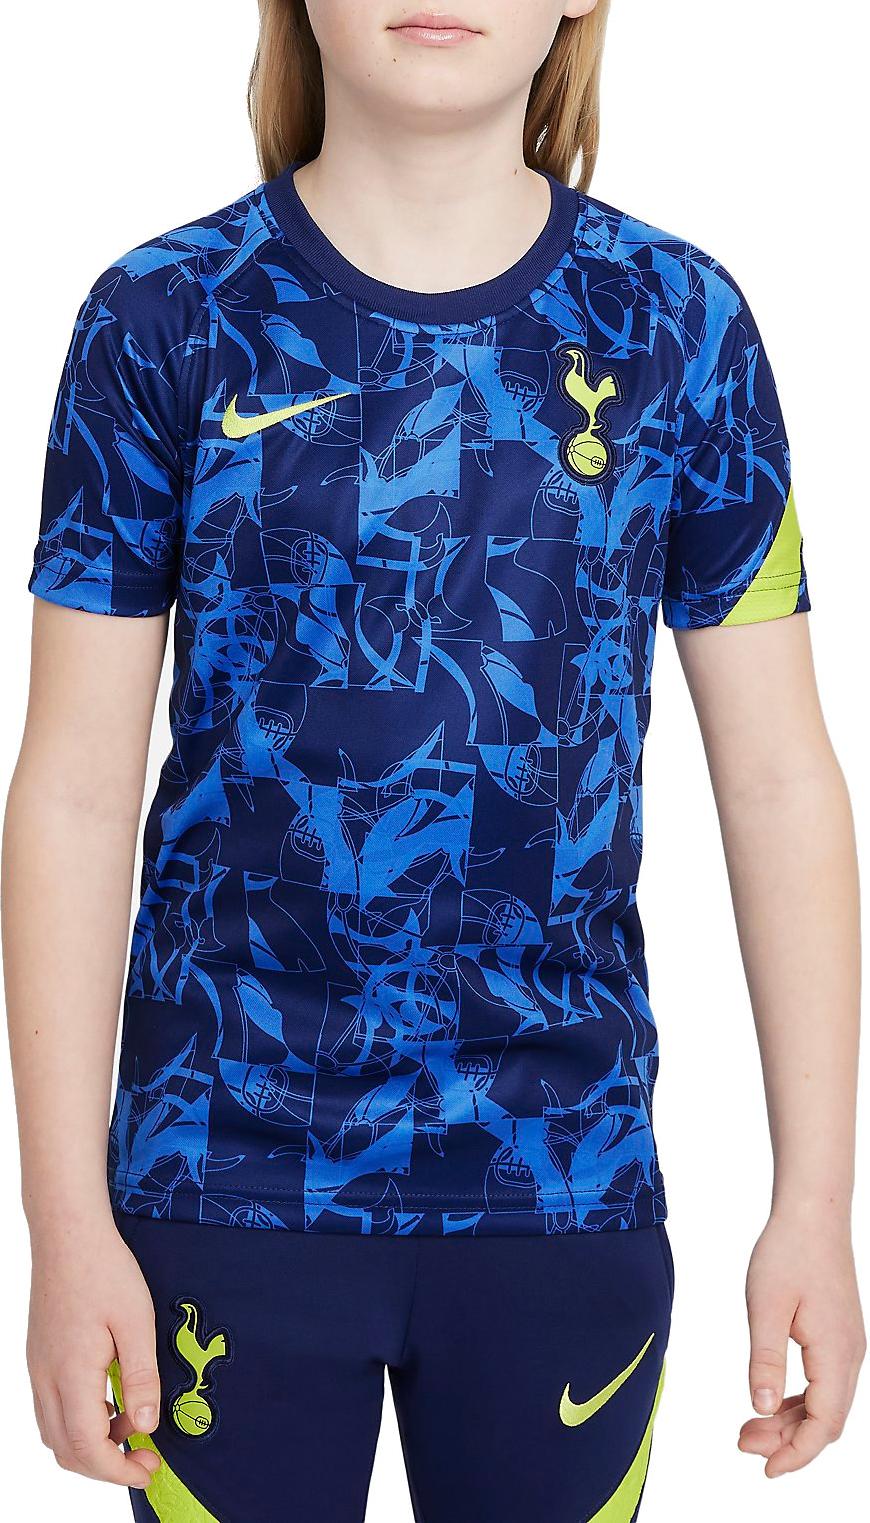 Tričko s krátkým rukávem pro větší děti Nike Tottenham Hotspur FC